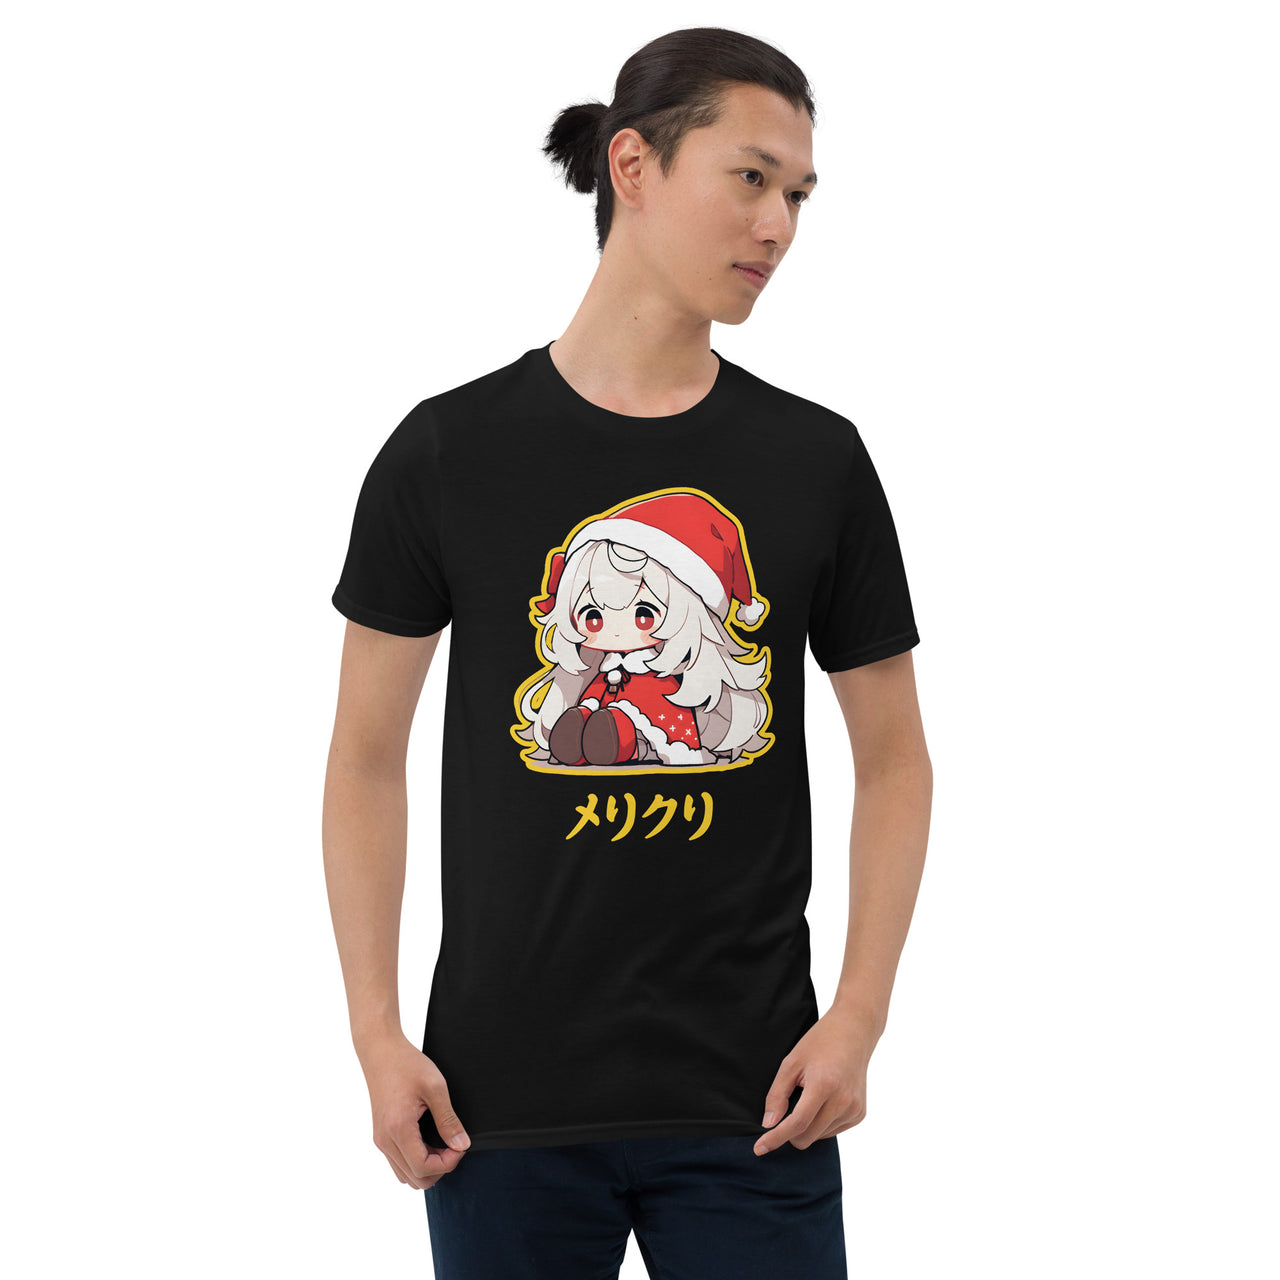 Japanese Anime Chibi Merikuri Santa Girl T-Shirt